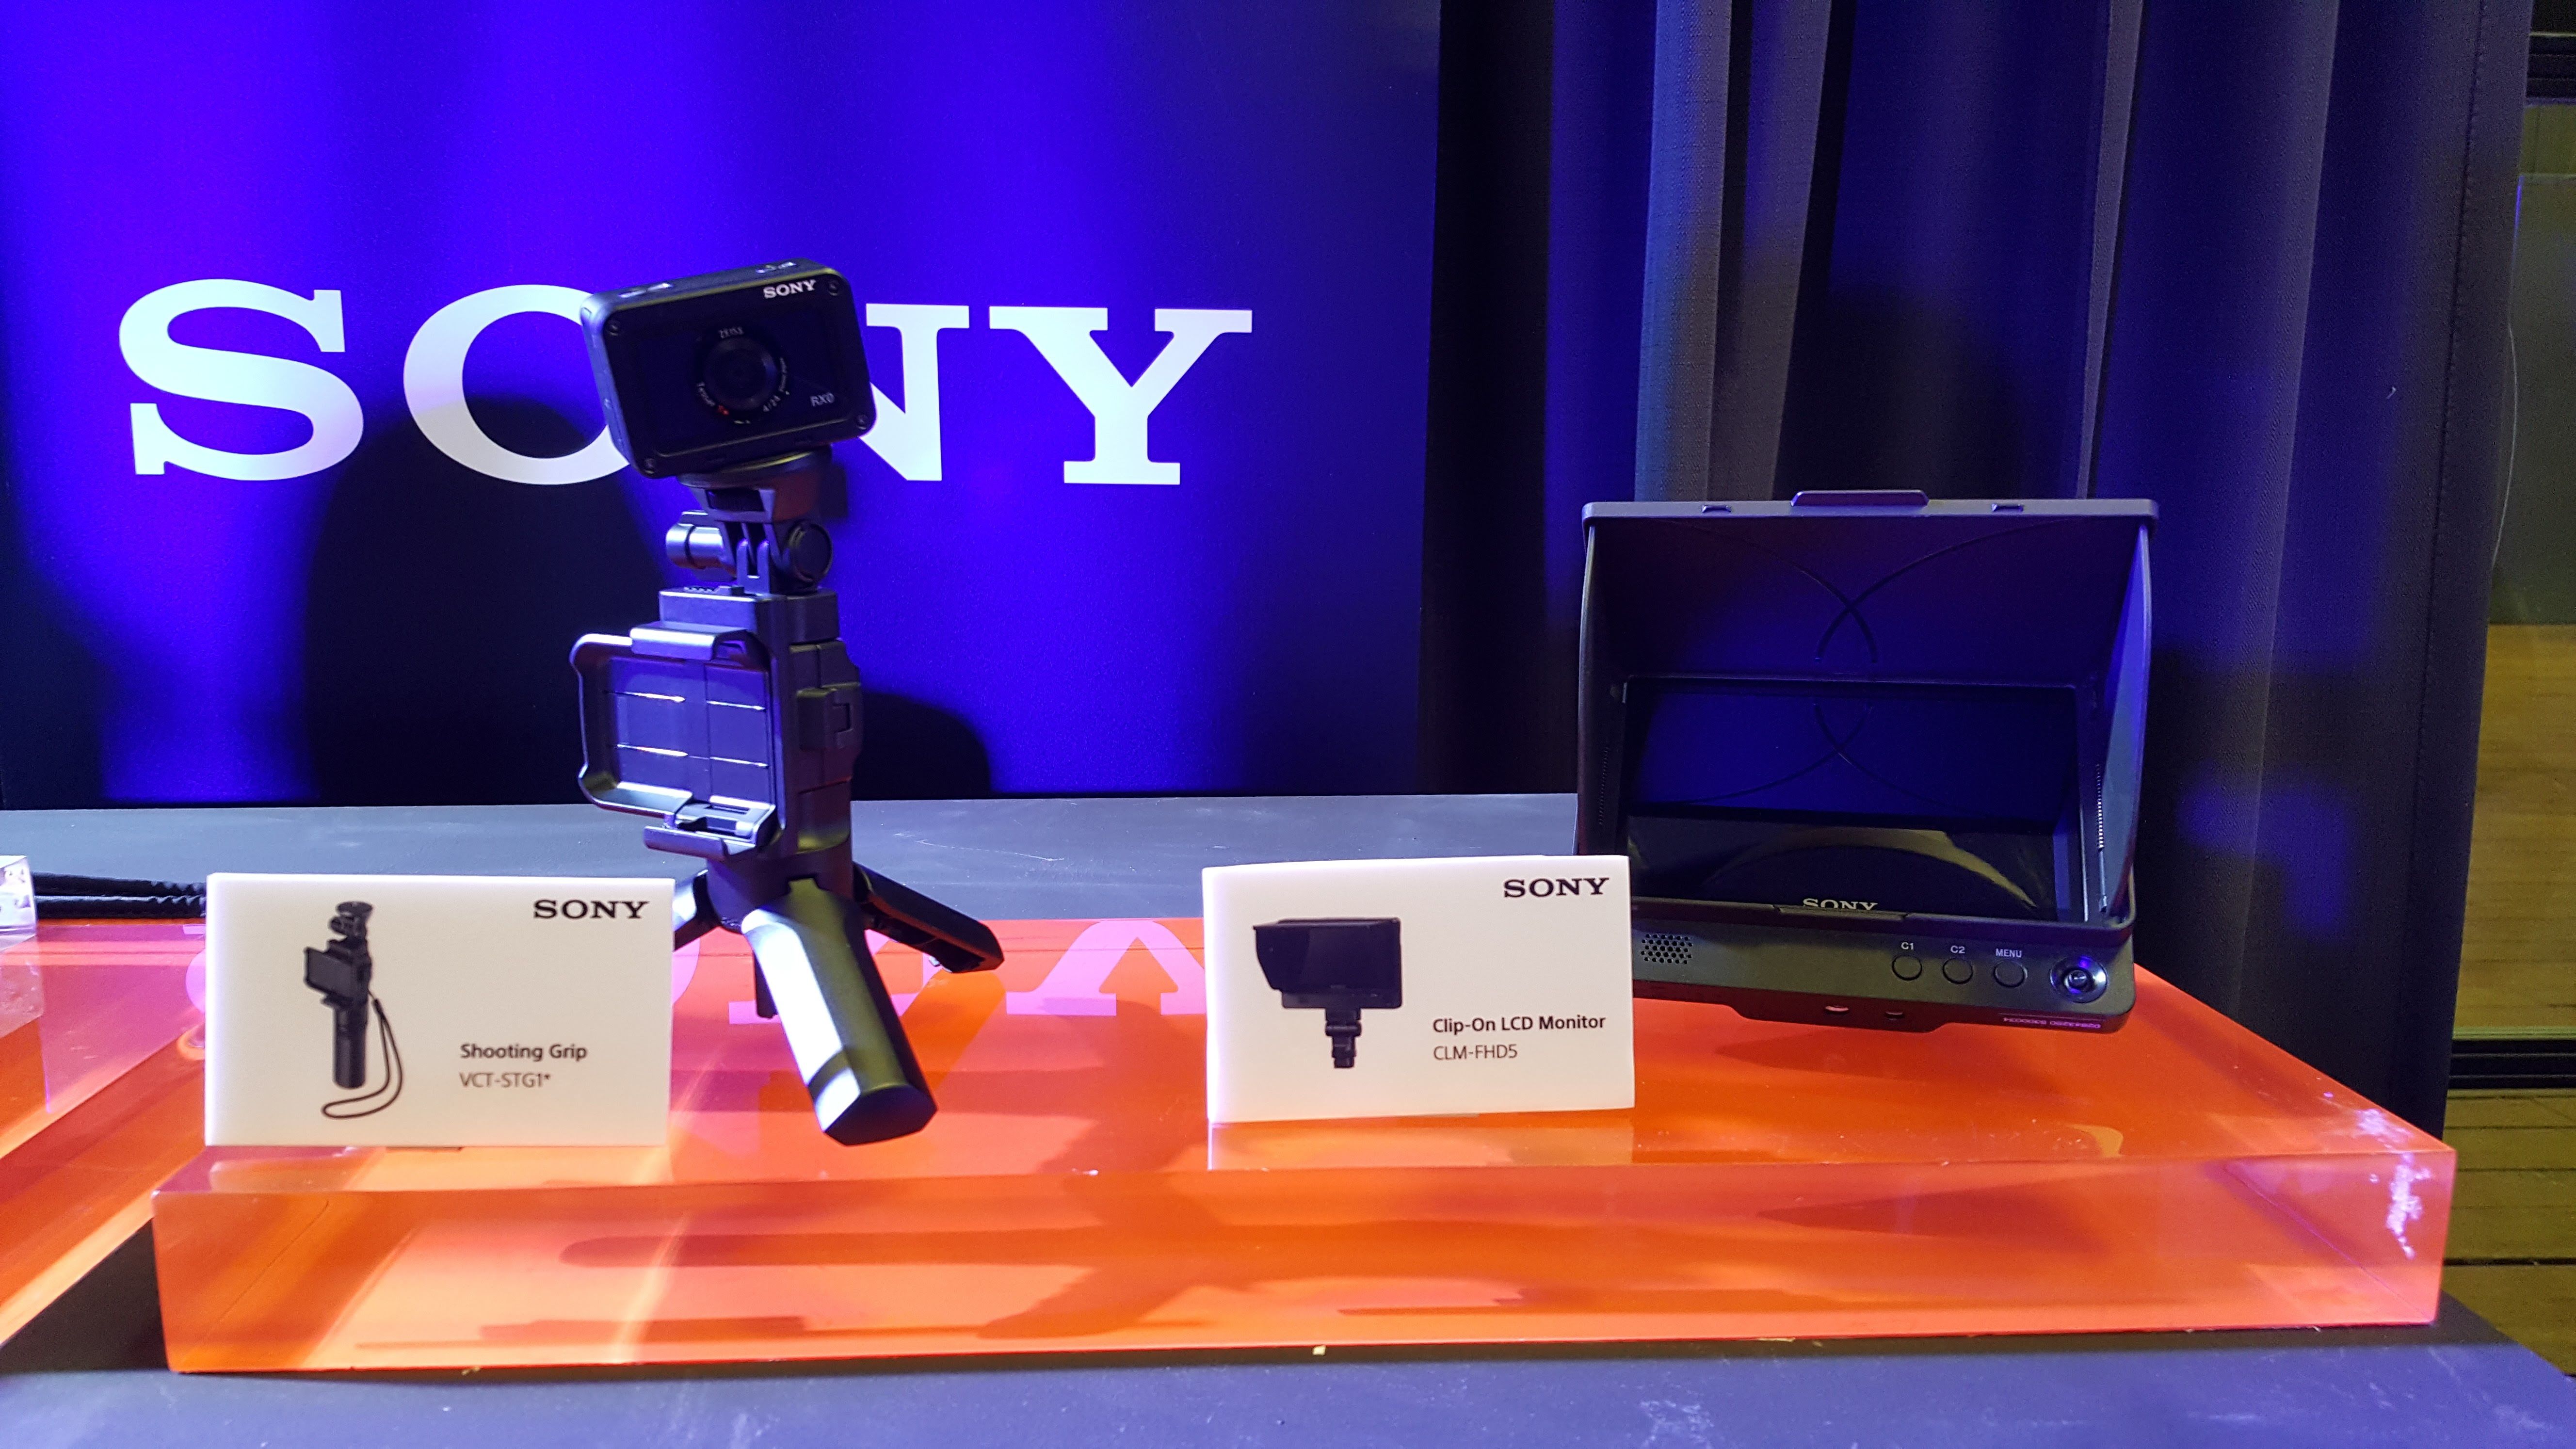 เปิดราคา Sony RX0 กล้องคอมแพคคุณภาพระดับโปร 24,990 บาท เริ่มวางจำหน่ายแล้ว